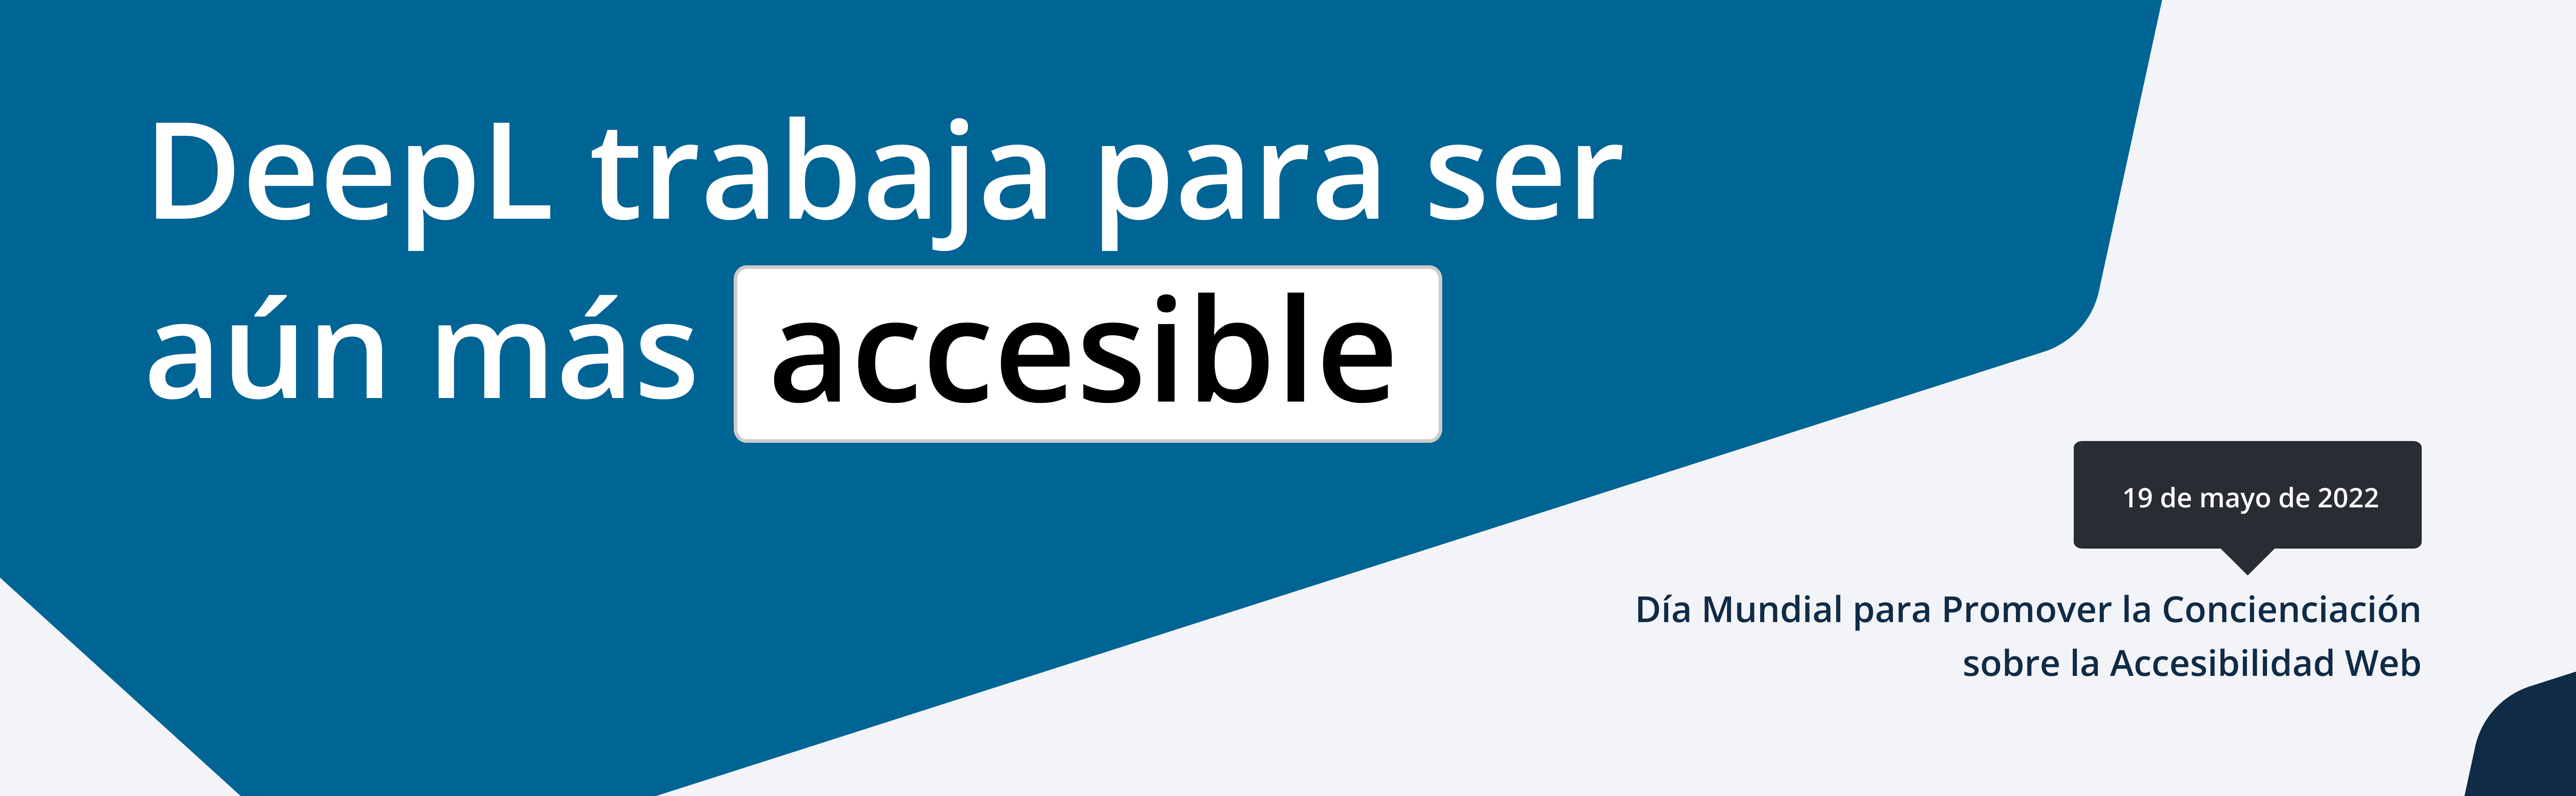 DeepL mejora su accesibilidad.  Día Mundial para Promover la Concienciación sobre la Accesibilidad Web: 19 de mayo de 2022